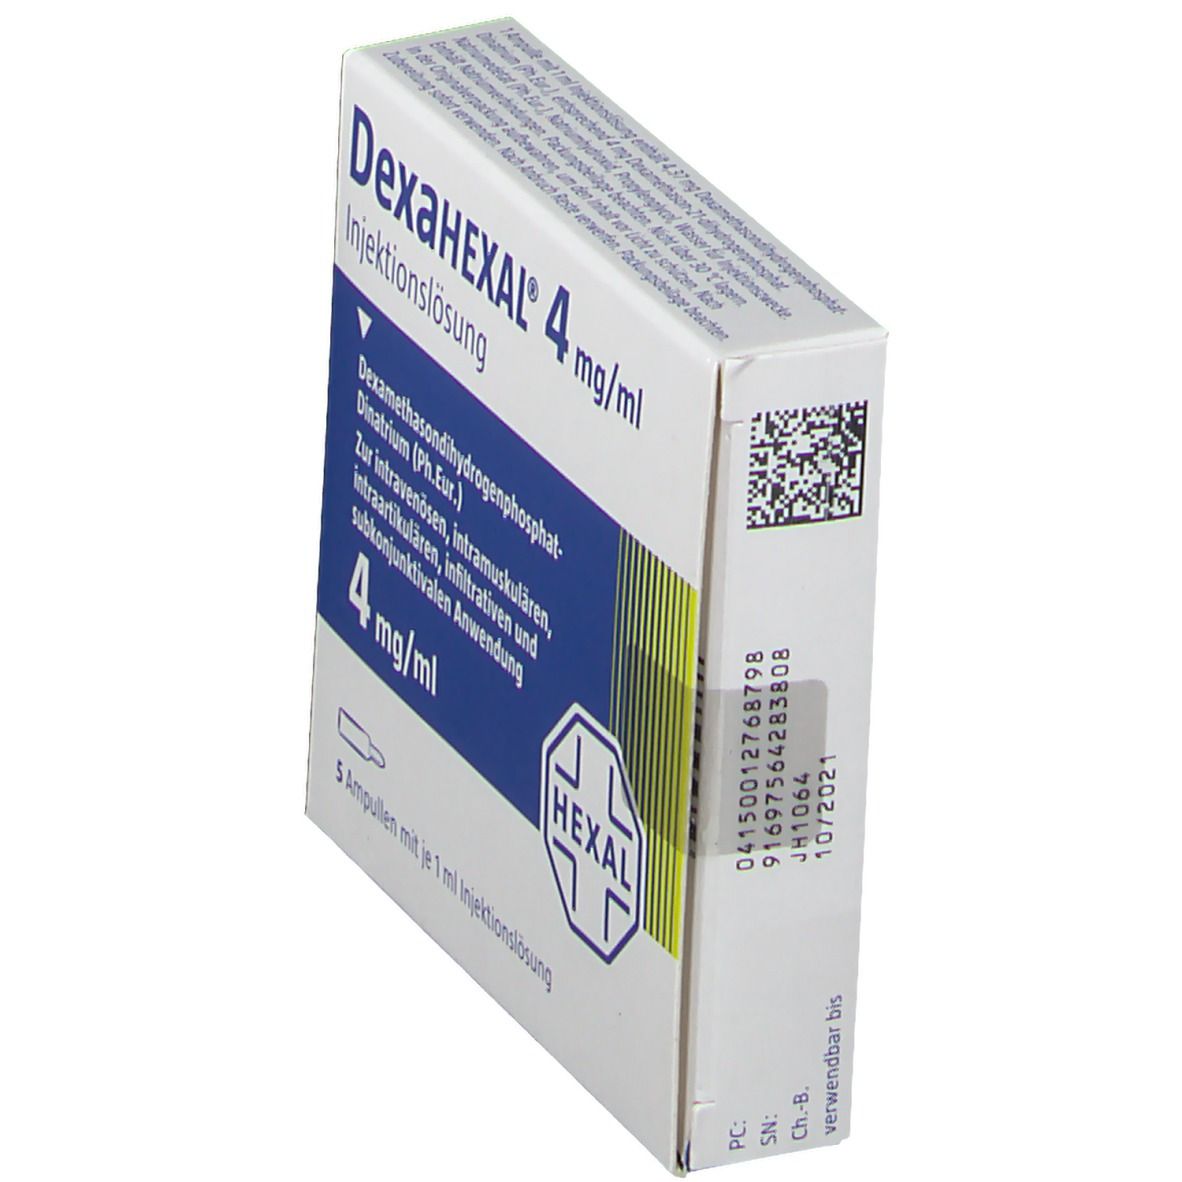 DexaHEXAL® 4 mg/ml